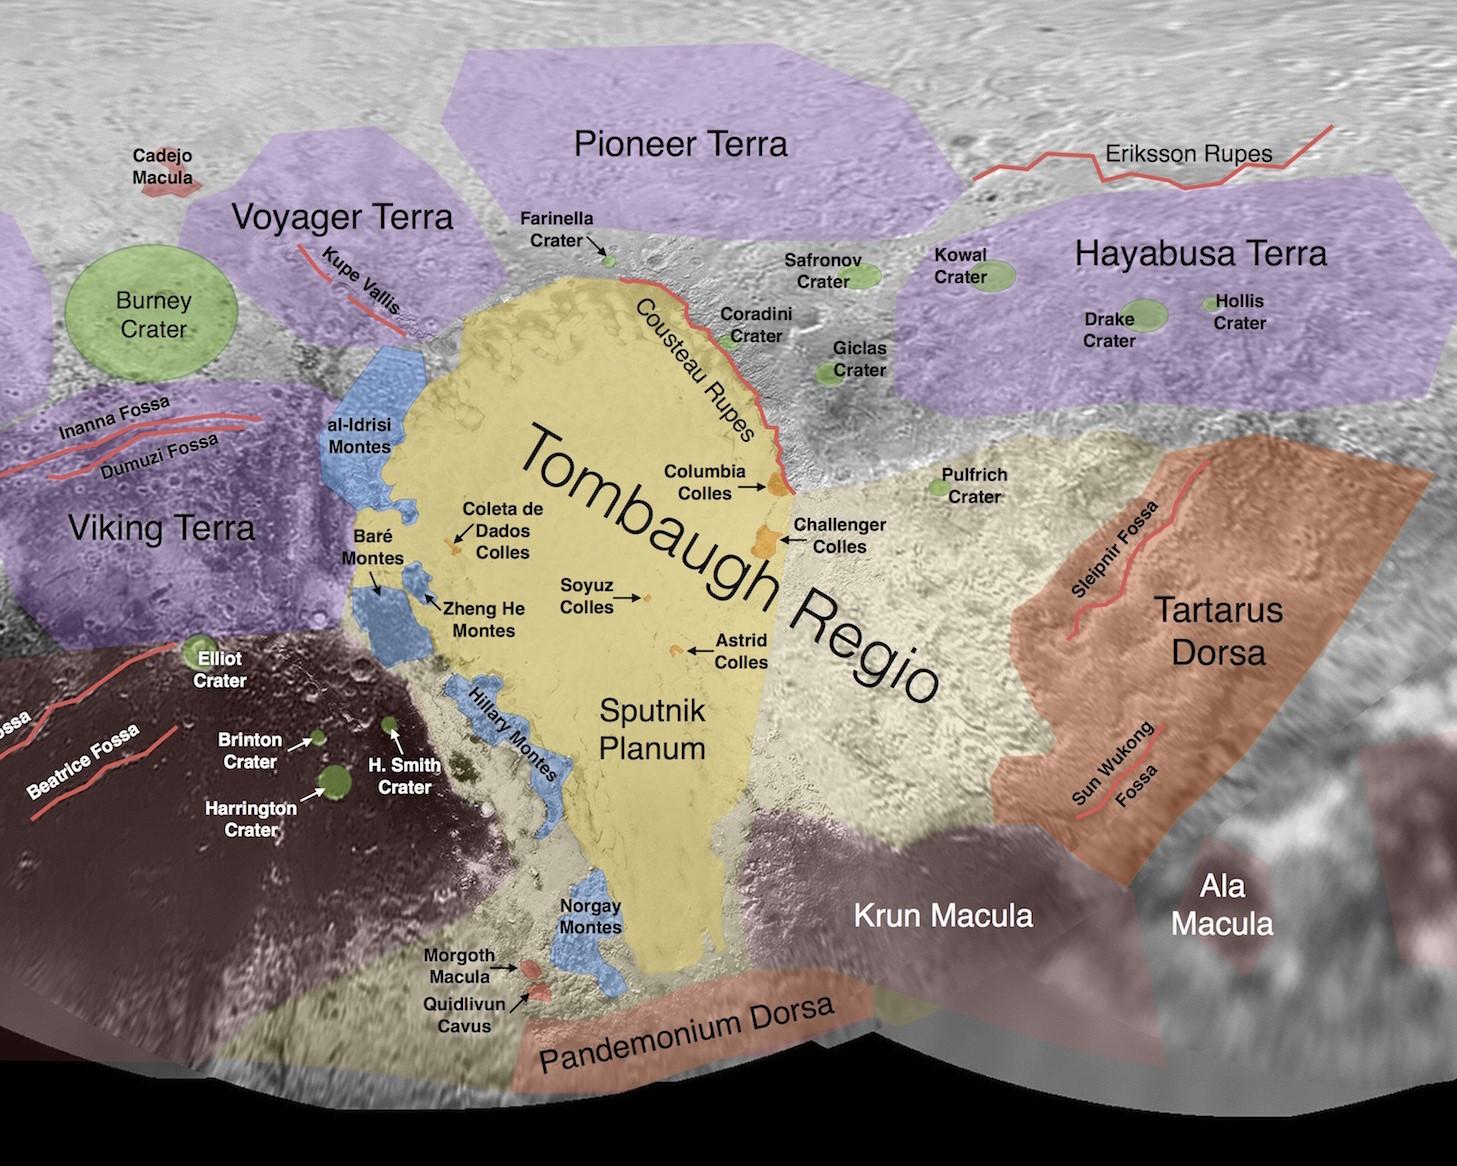 Cette image contient les premiers noms informels utilisés par l'équipe de New Horizons pour désigner les caractéristiques et les régions de la surface de Pluton. [Public Domain - JPL/NASA]